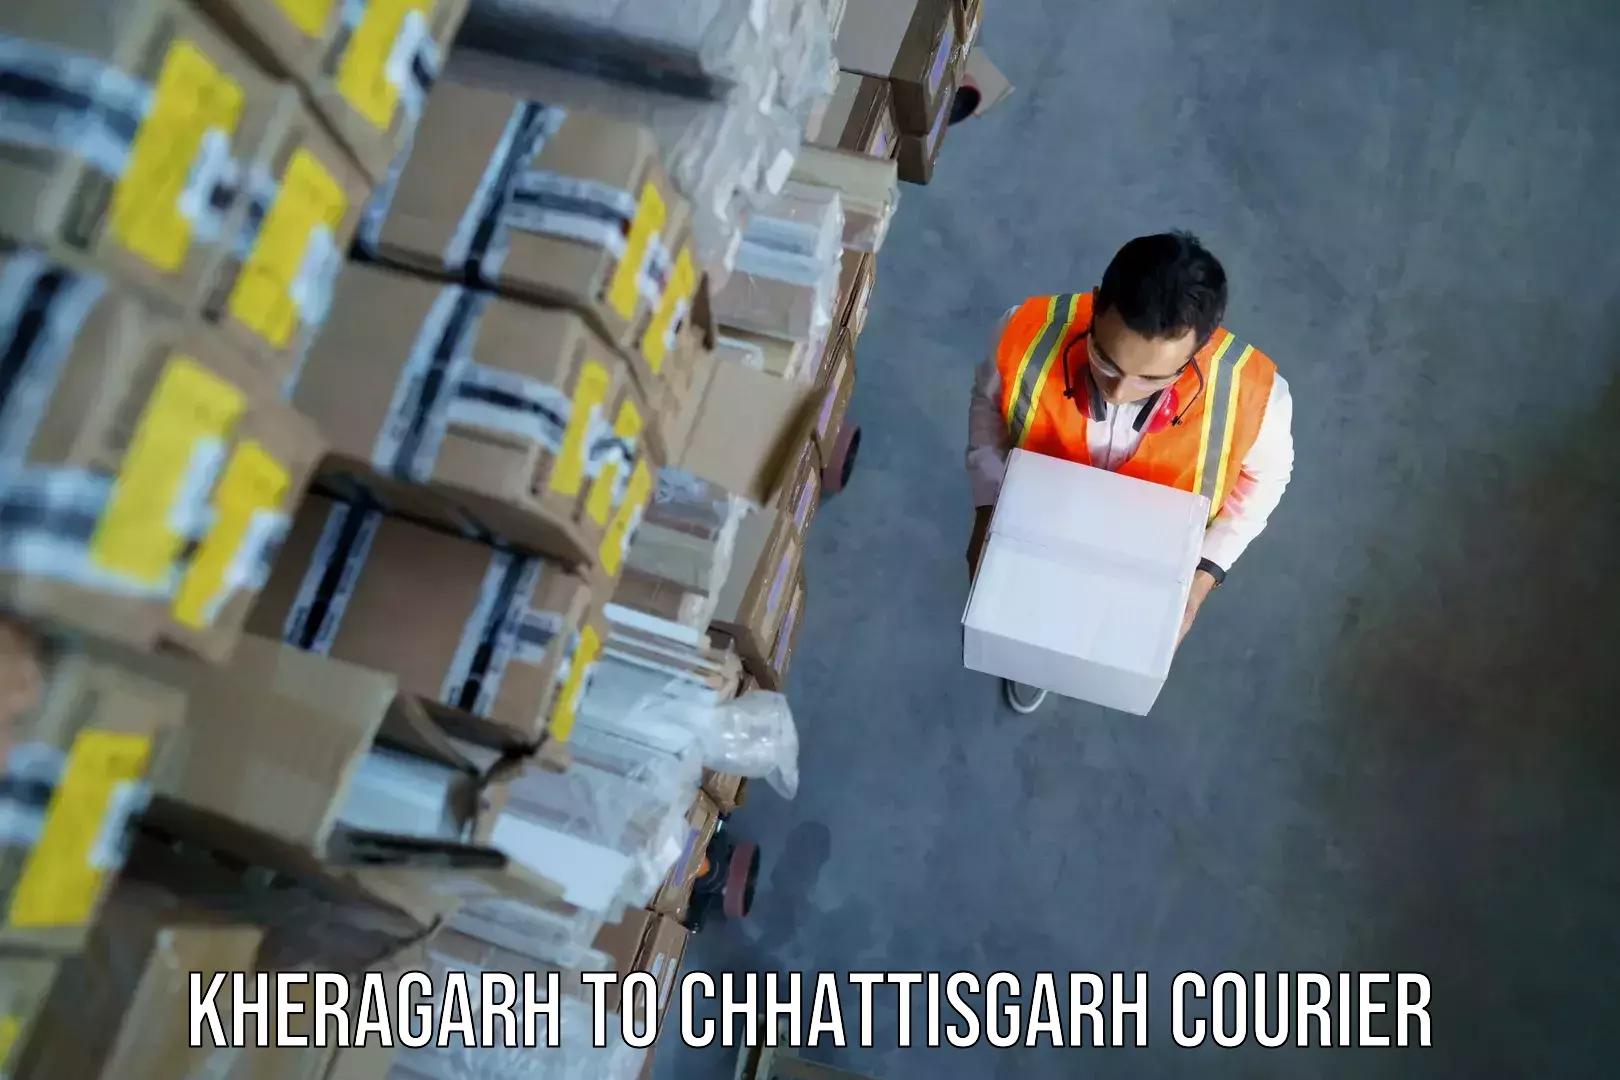 Baggage relocation service Kheragarh to Chhattisgarh